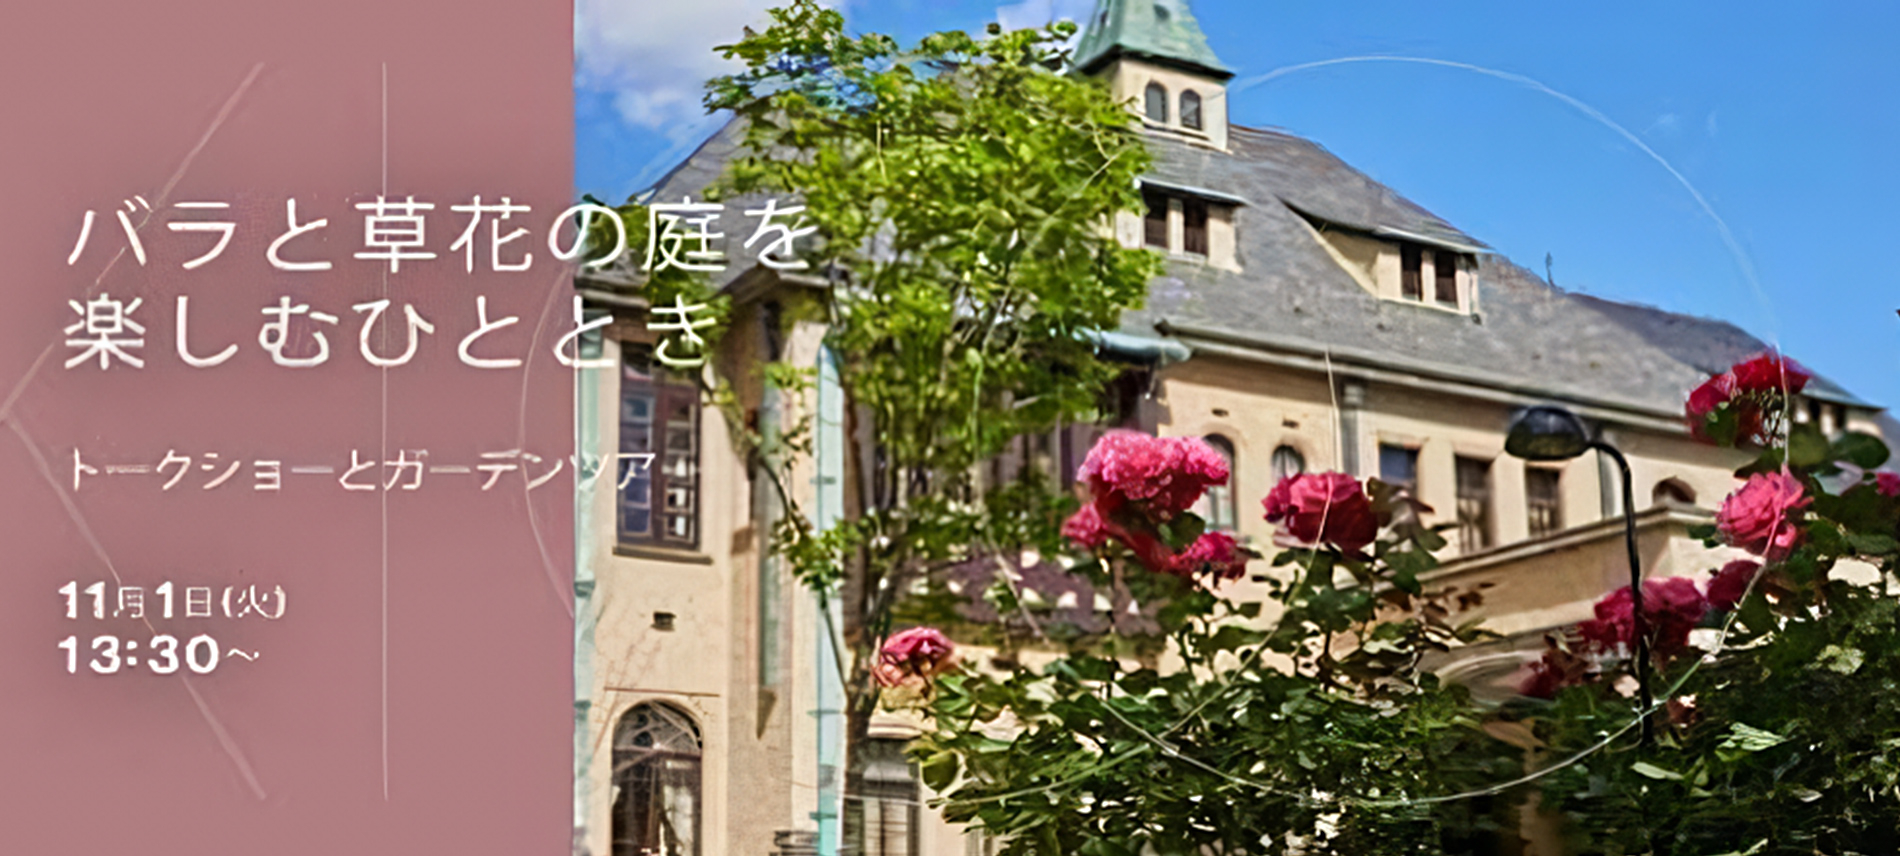 バラと草花の庭を楽しむひととき　―赤坂プリンス クラシックハウス&KIOI ROSE GARDEN―